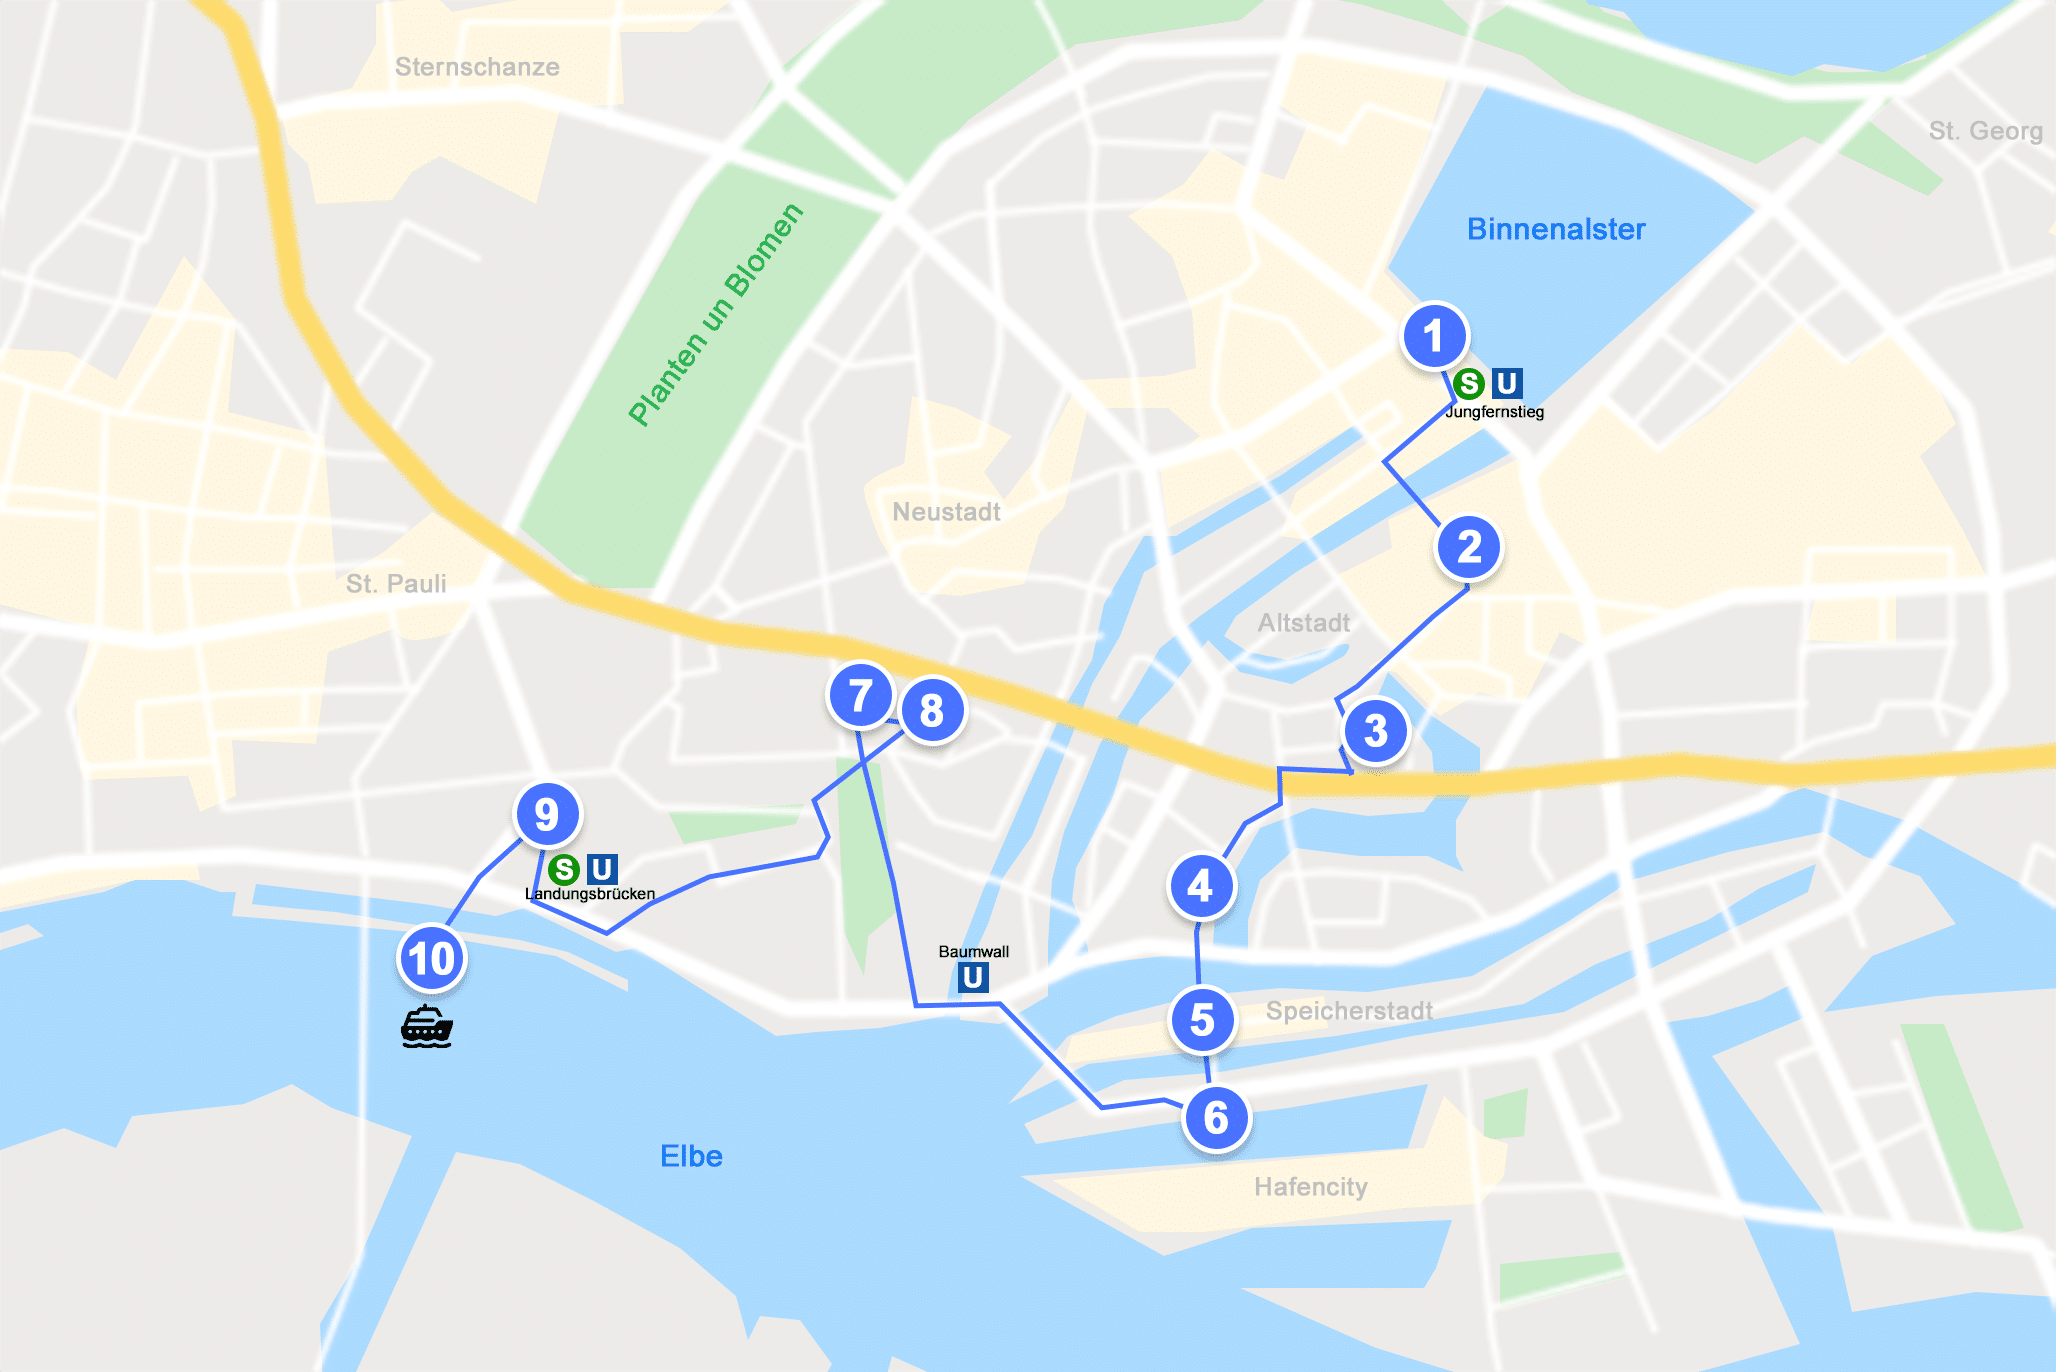 Karte mit Markierungen der Attraktionen in Hamburg, die ich folgend beschreibe